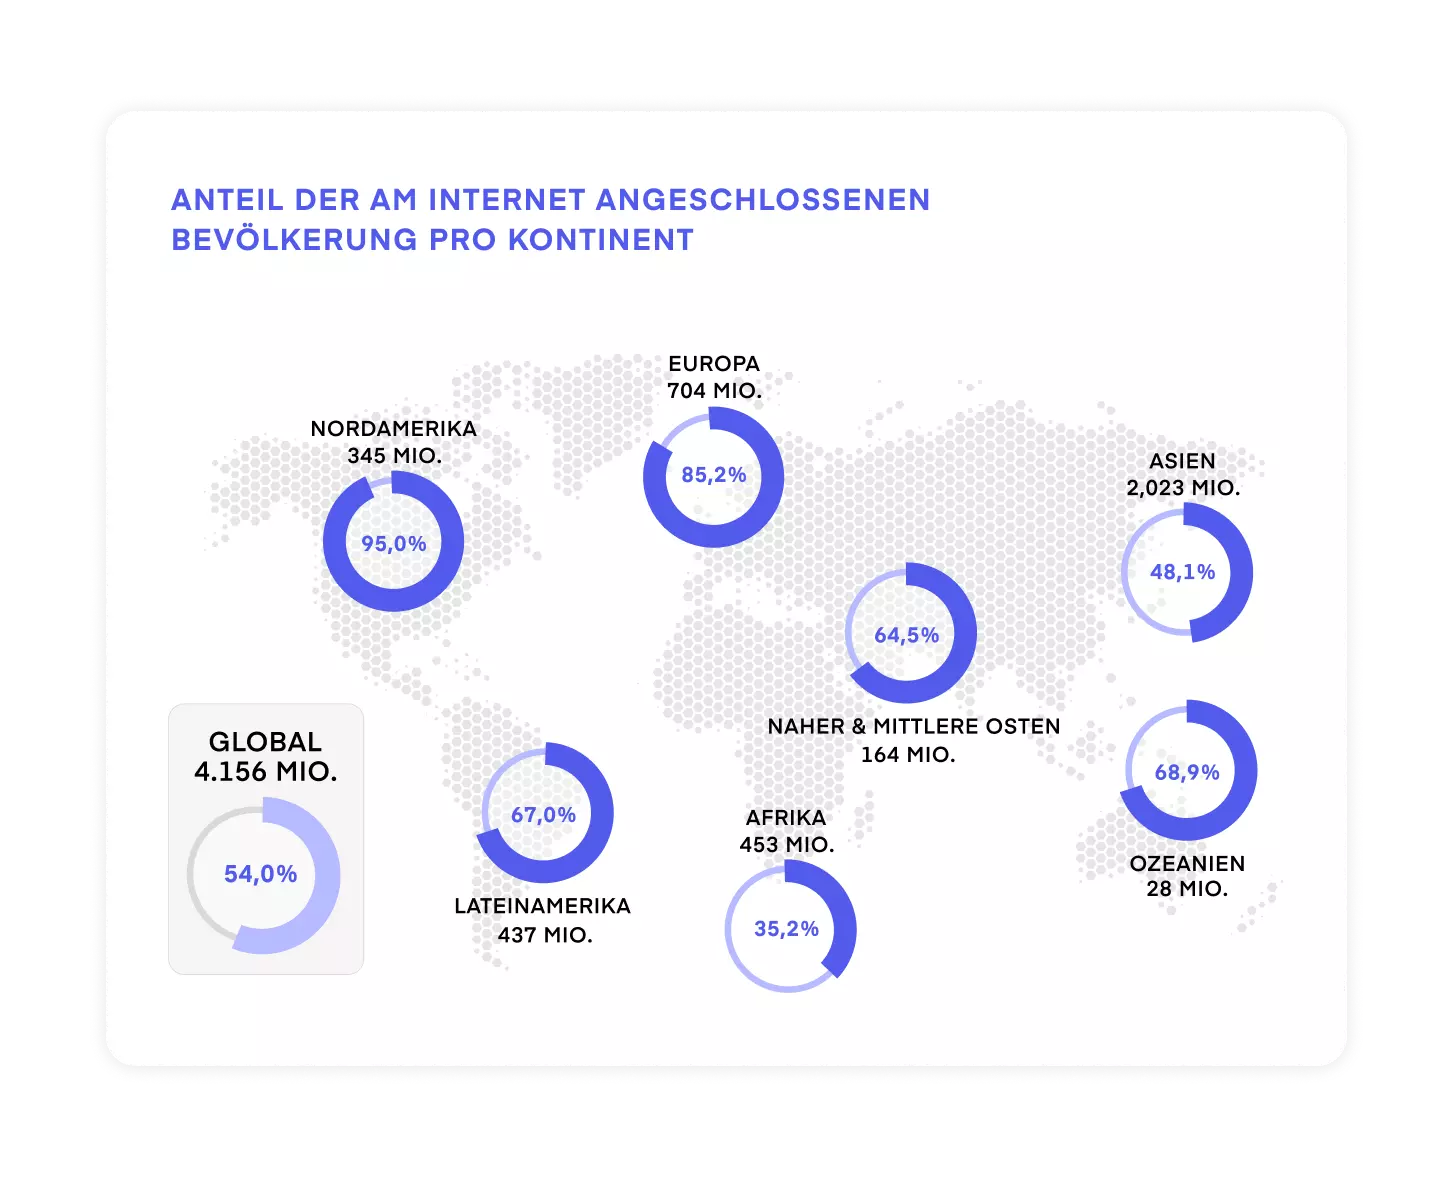 Schaubild: Internetnutzer in Prozent der Bevölkerung pro Kontinent